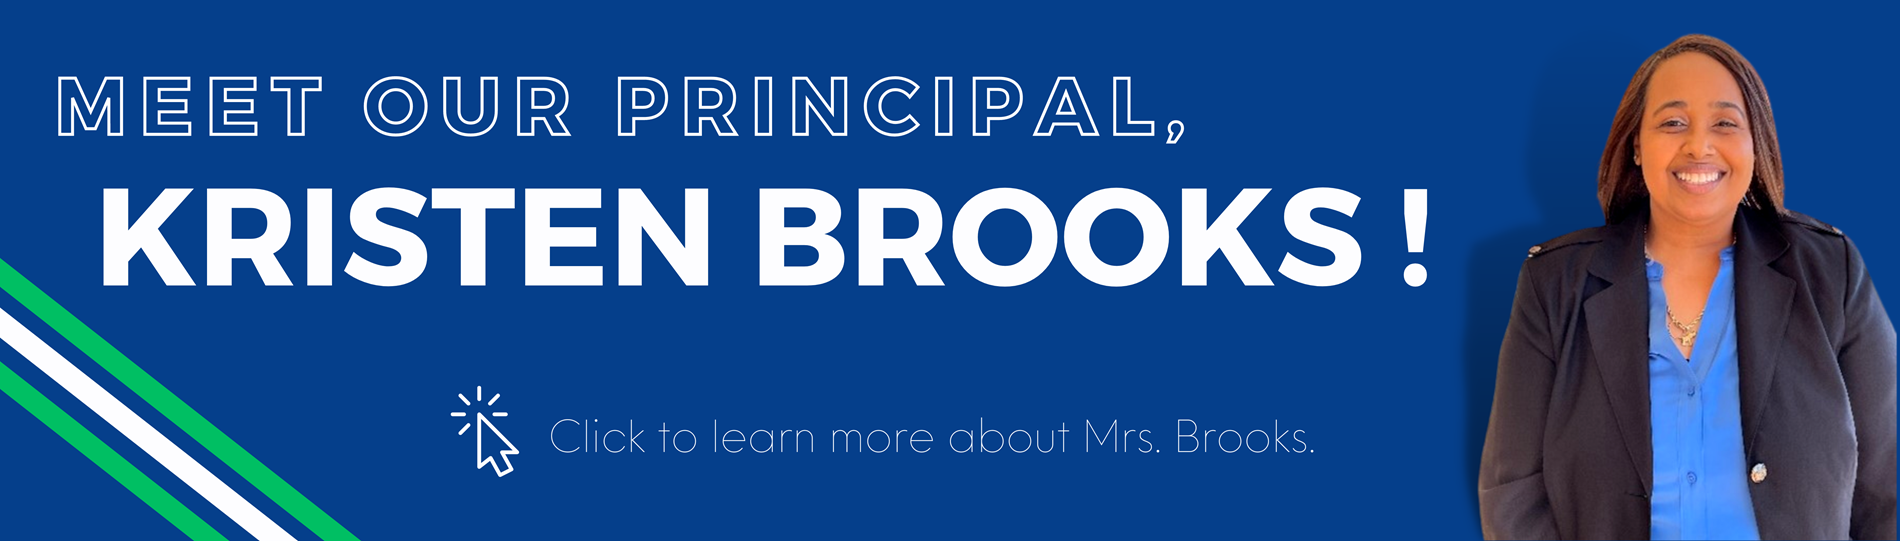 Meet Our Principal Mrs. Kristen Brooks